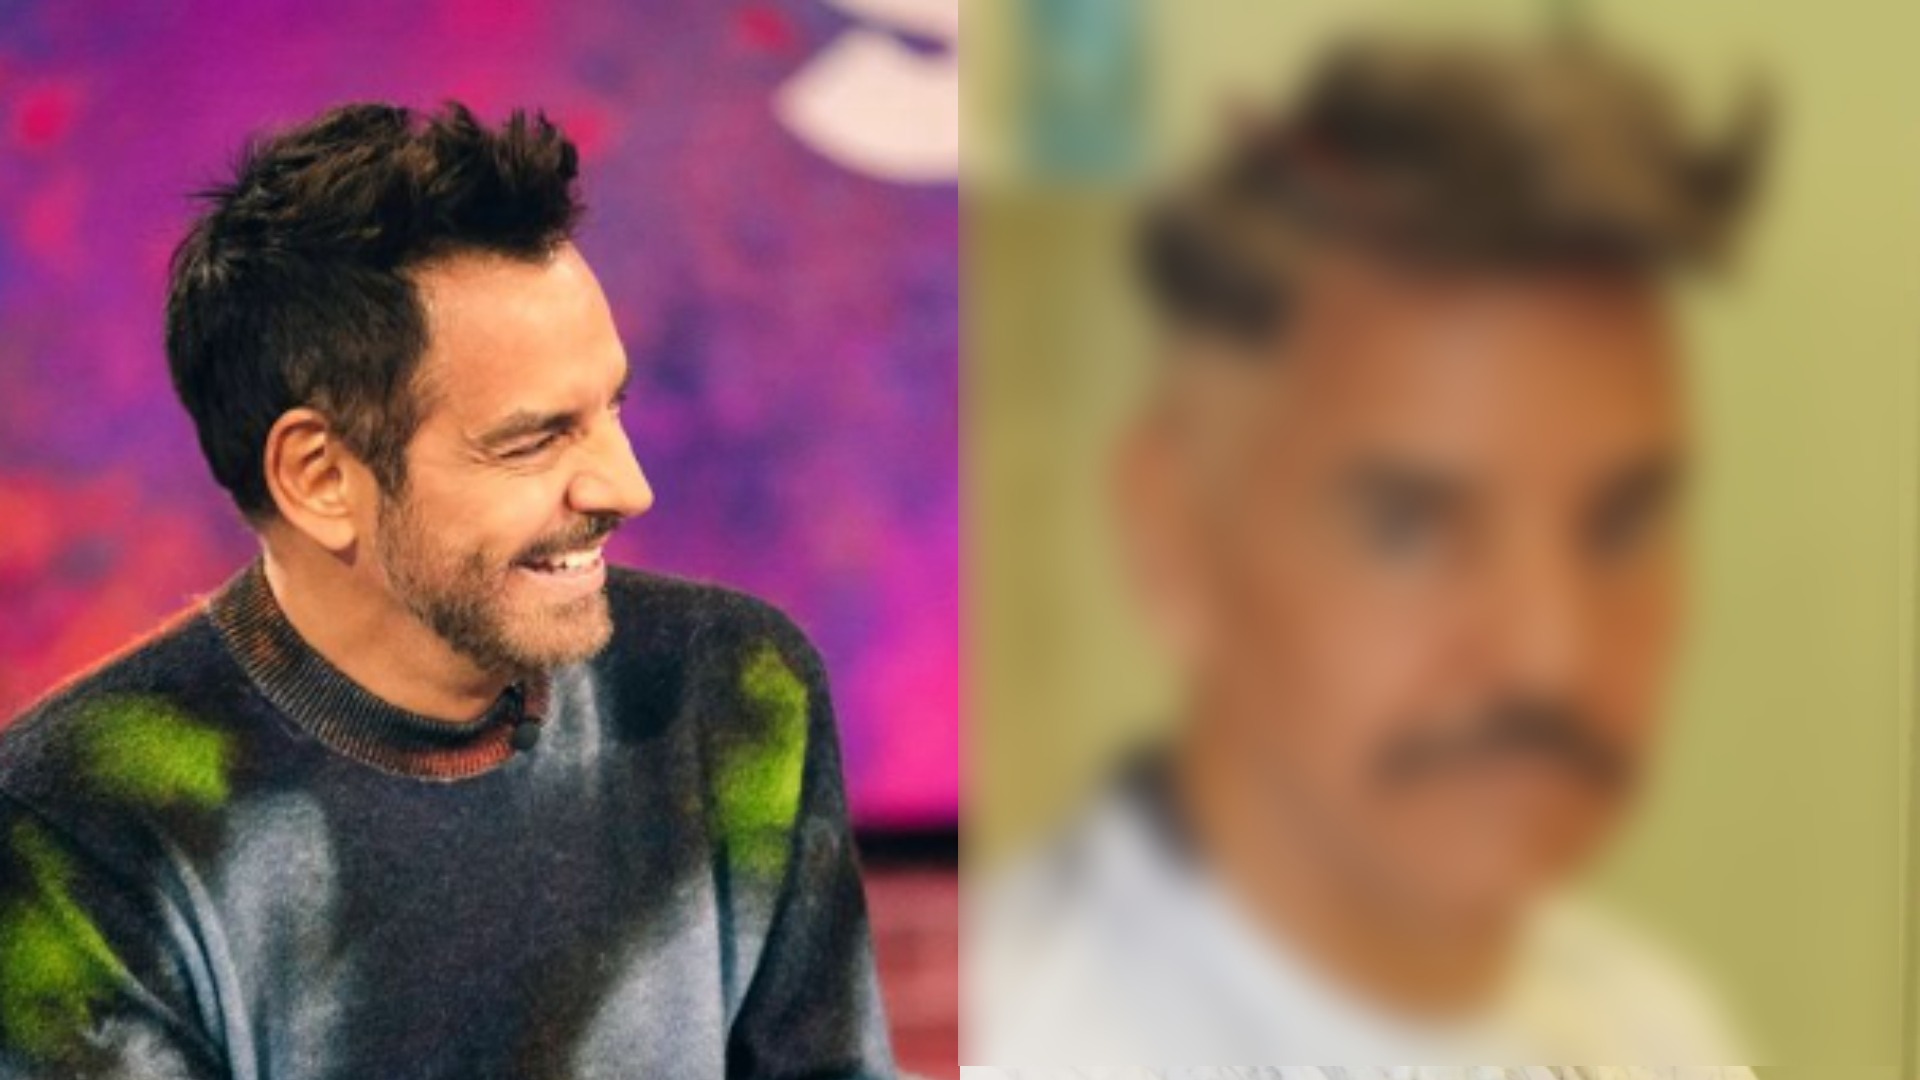  “El peor corte de cabello”: Eugenio Derbez  admitió que detestó su nuevo look